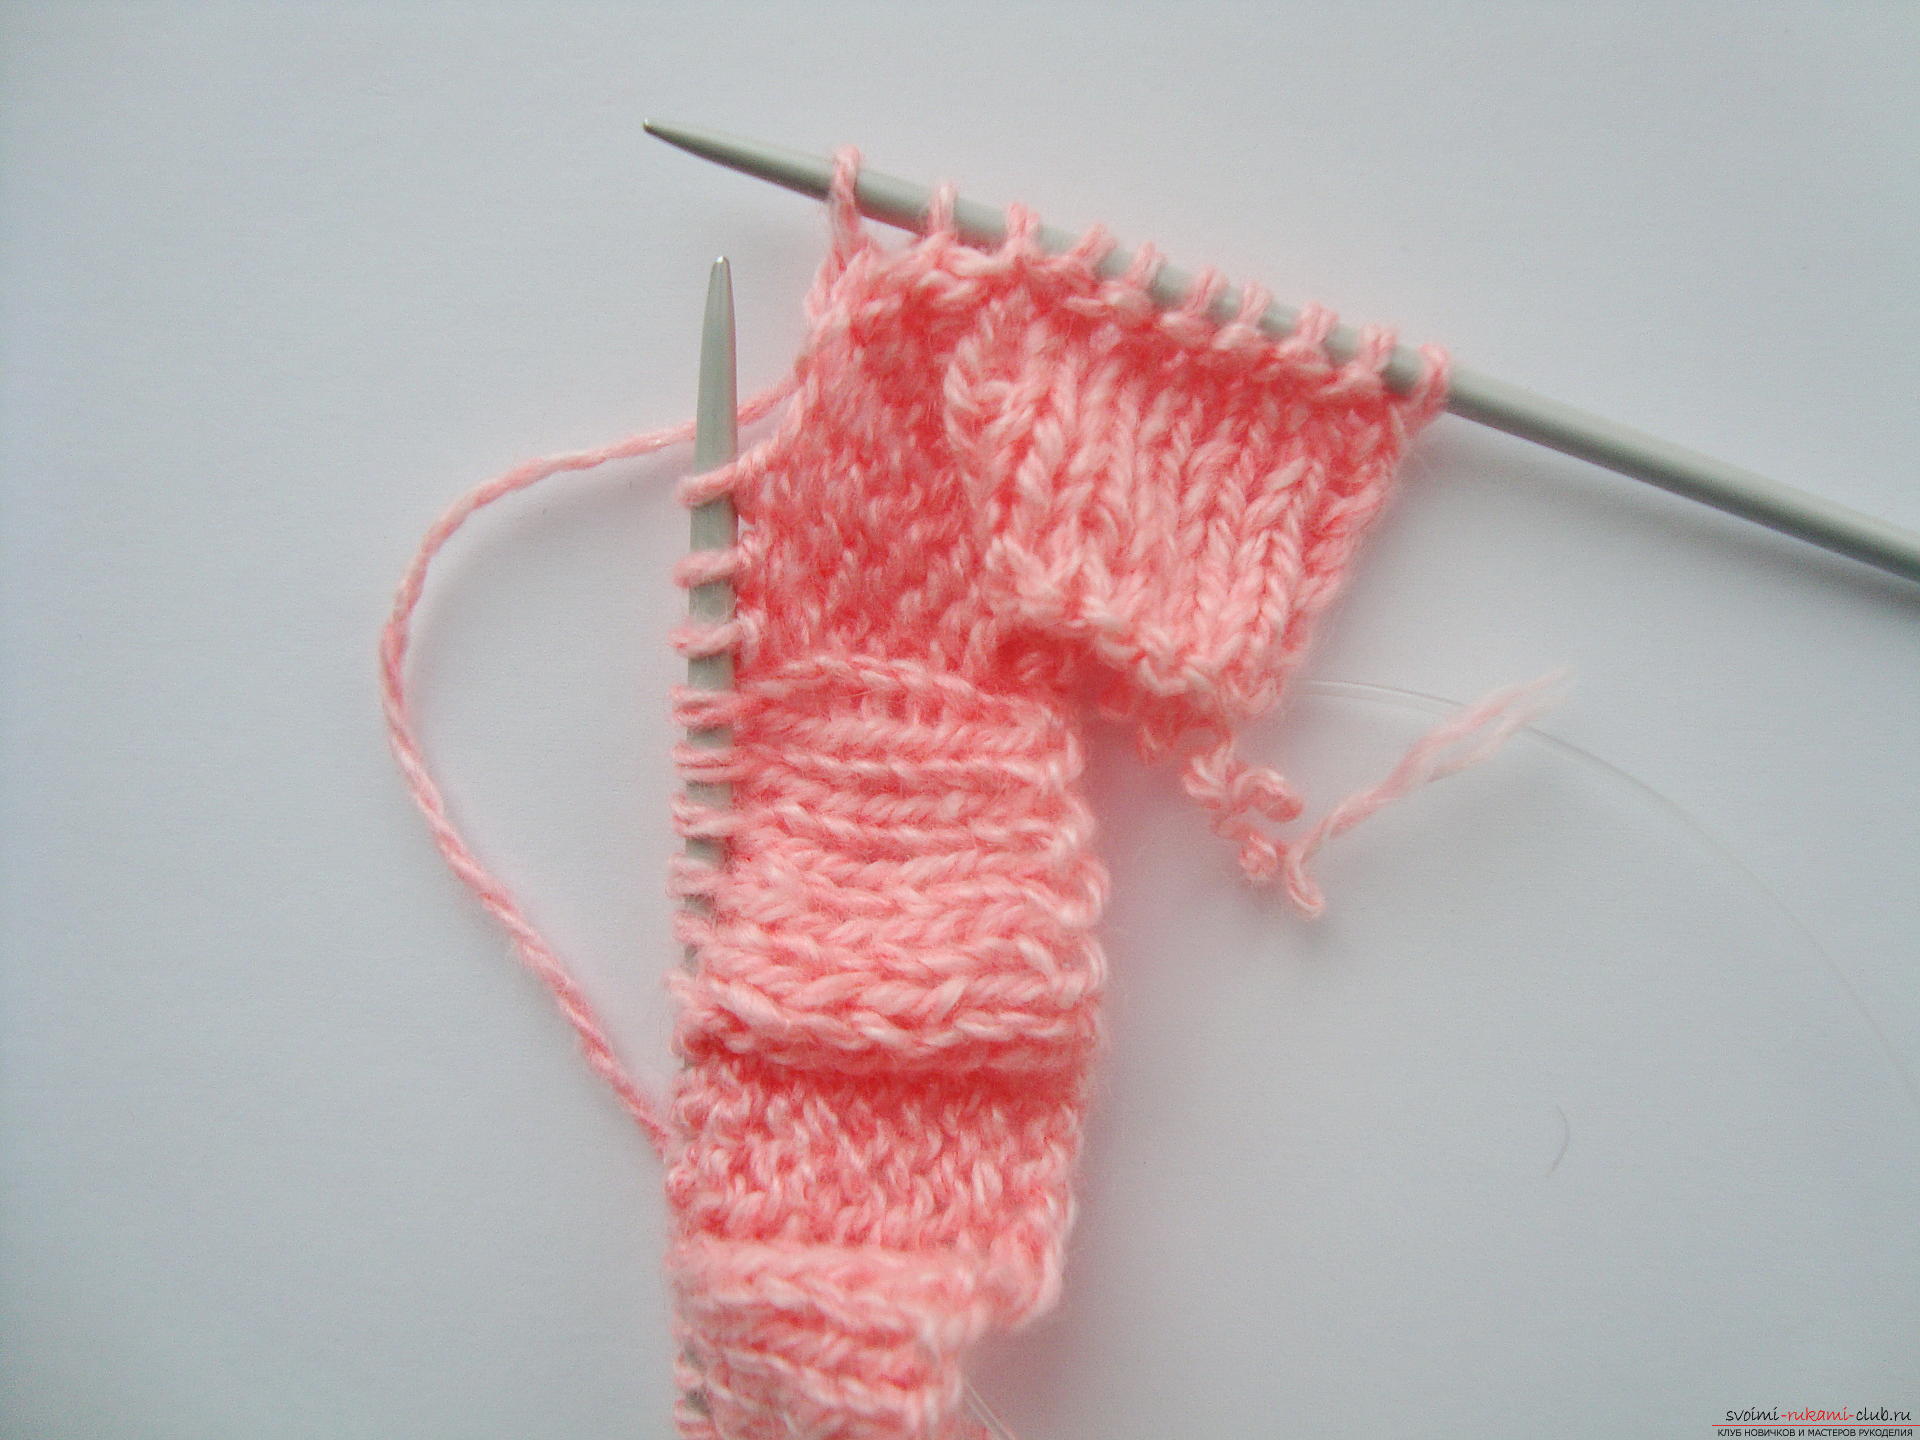 Photo-instruction on knitting needles-napkins under the hot. Photo №6